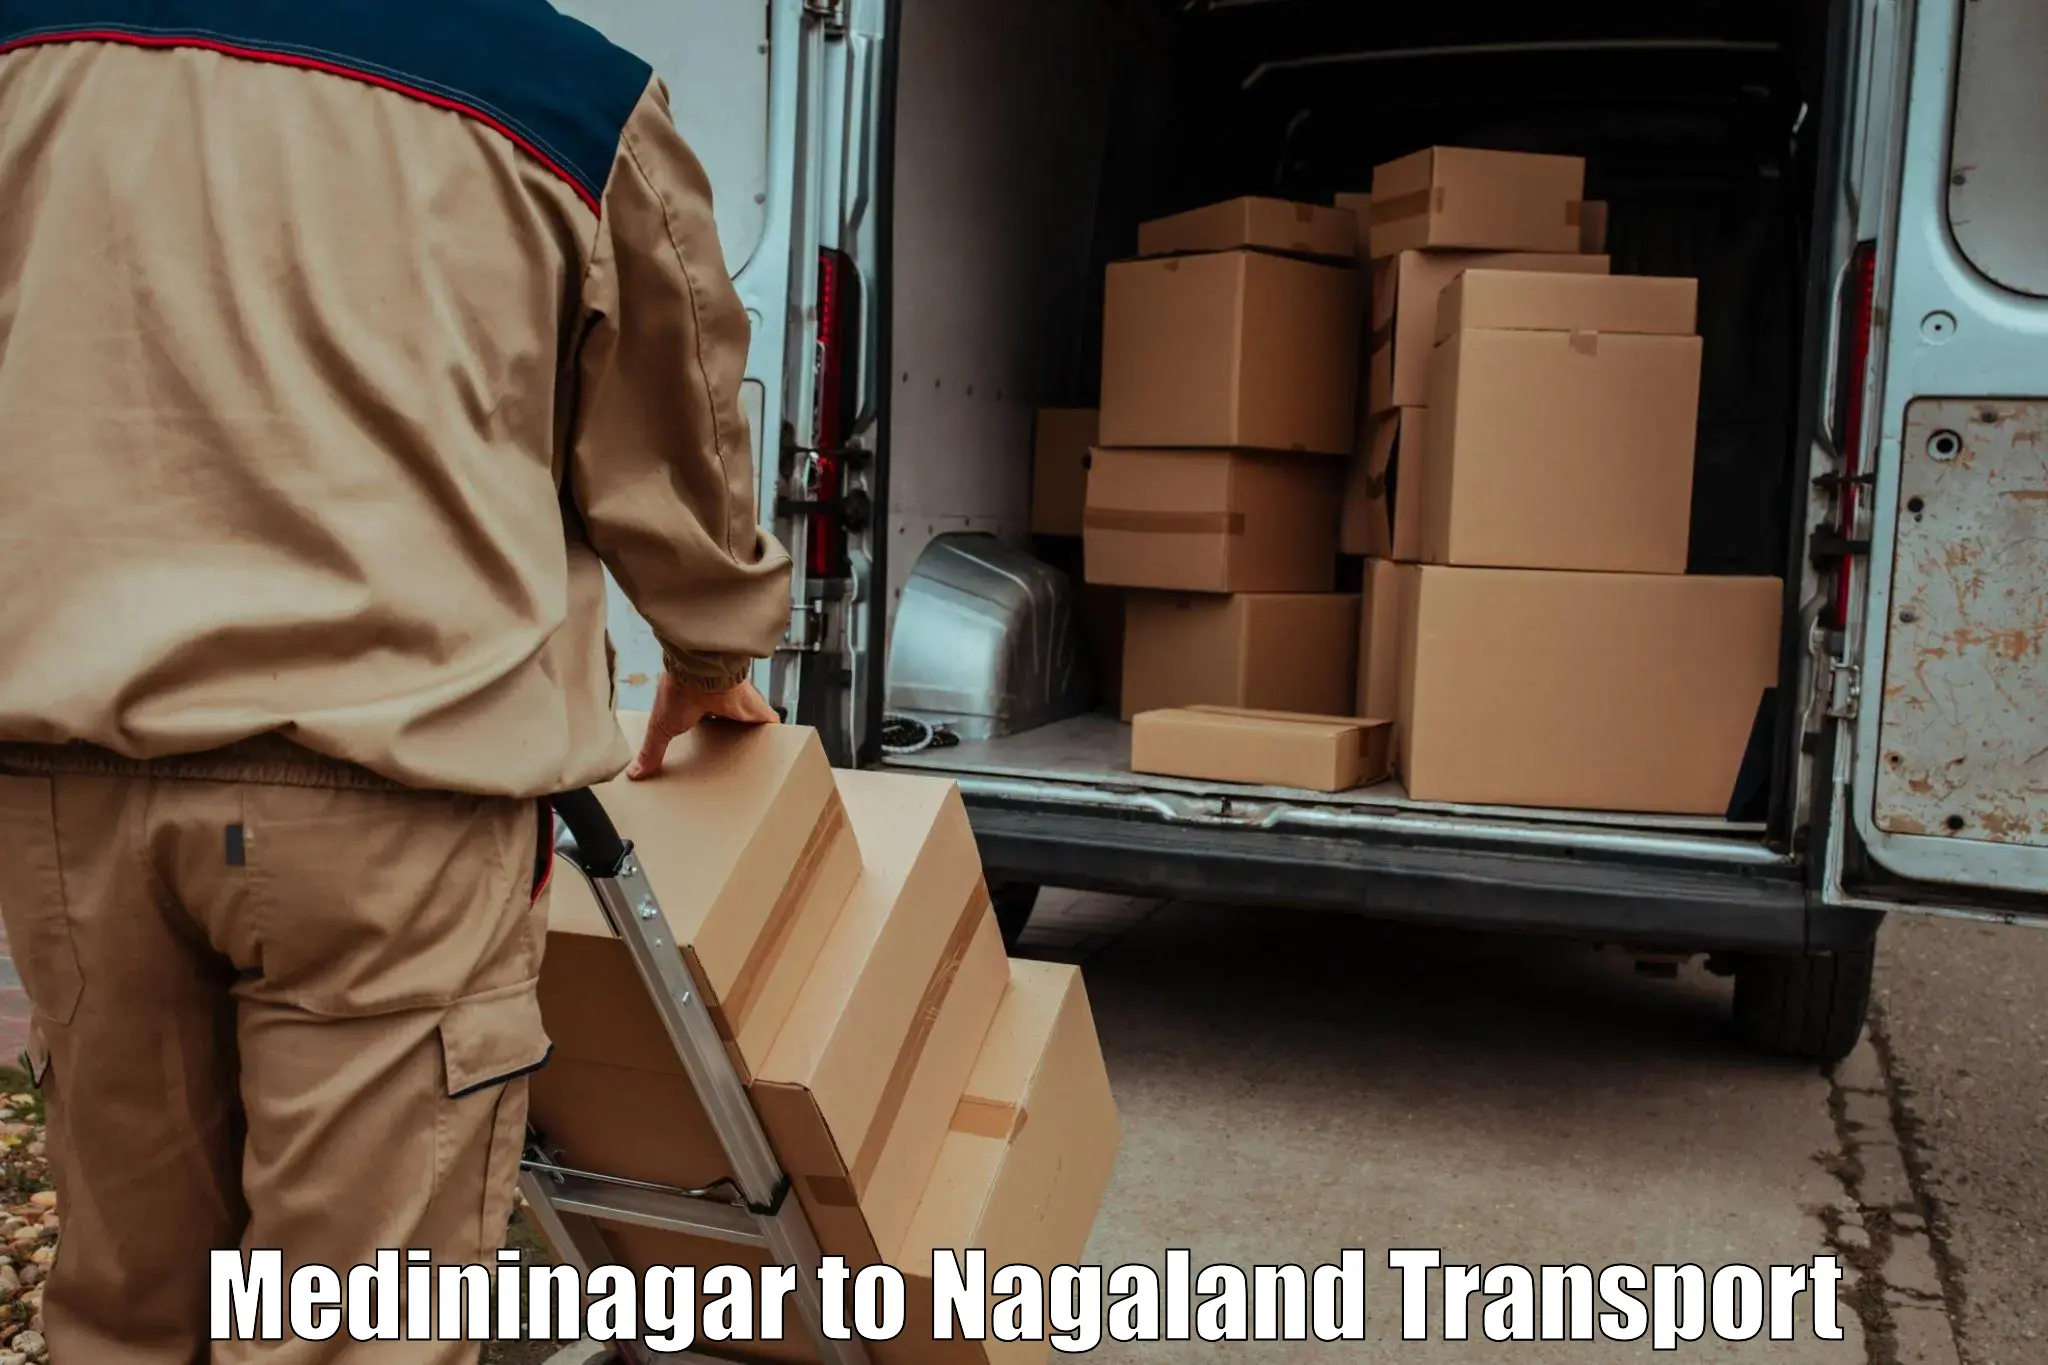 Daily parcel service transport Medininagar to Nagaland